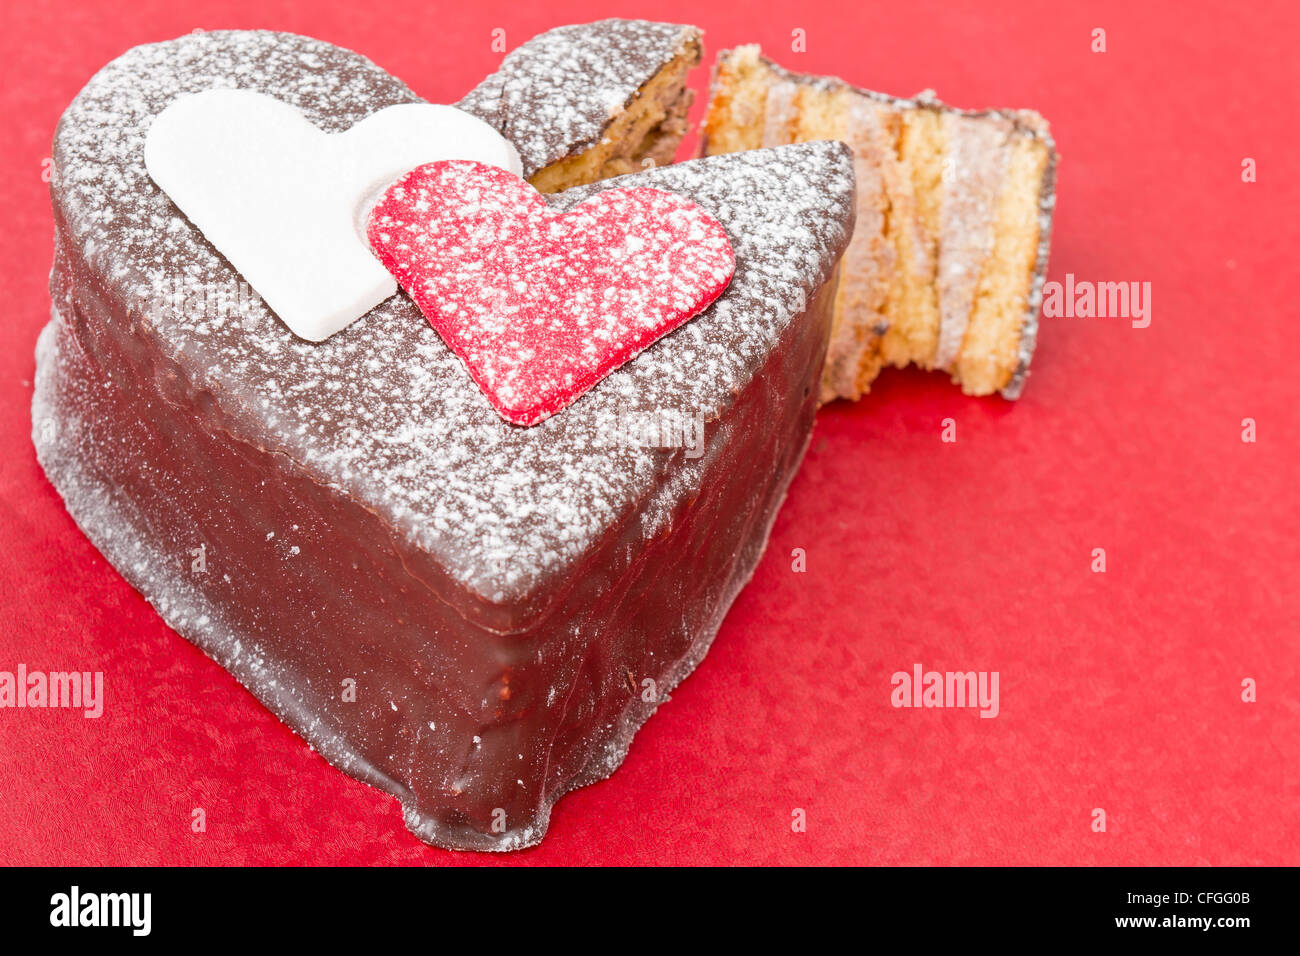 En forme de coeur une tranche de gâteau de chocolat sur la table rouge Banque D'Images